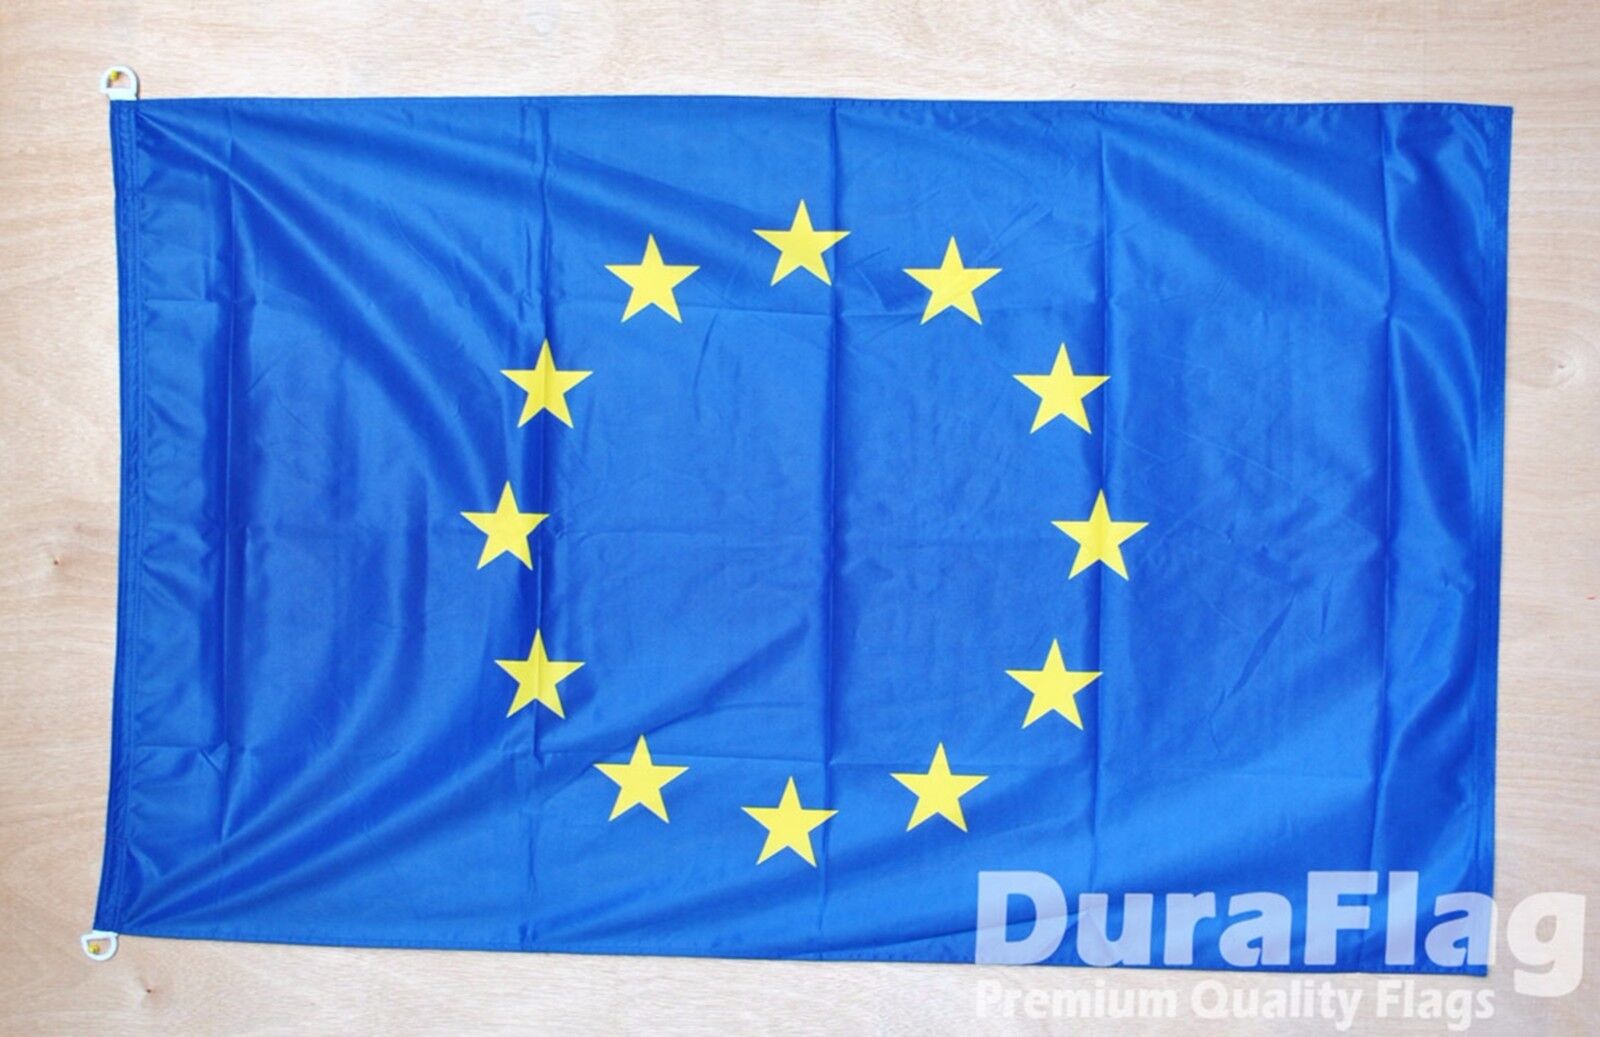 EUROPEAN UNION DURAFLAG with D-RINGS 150cm x 90cm 5X3 HIGH QUALITY FLAG EURO